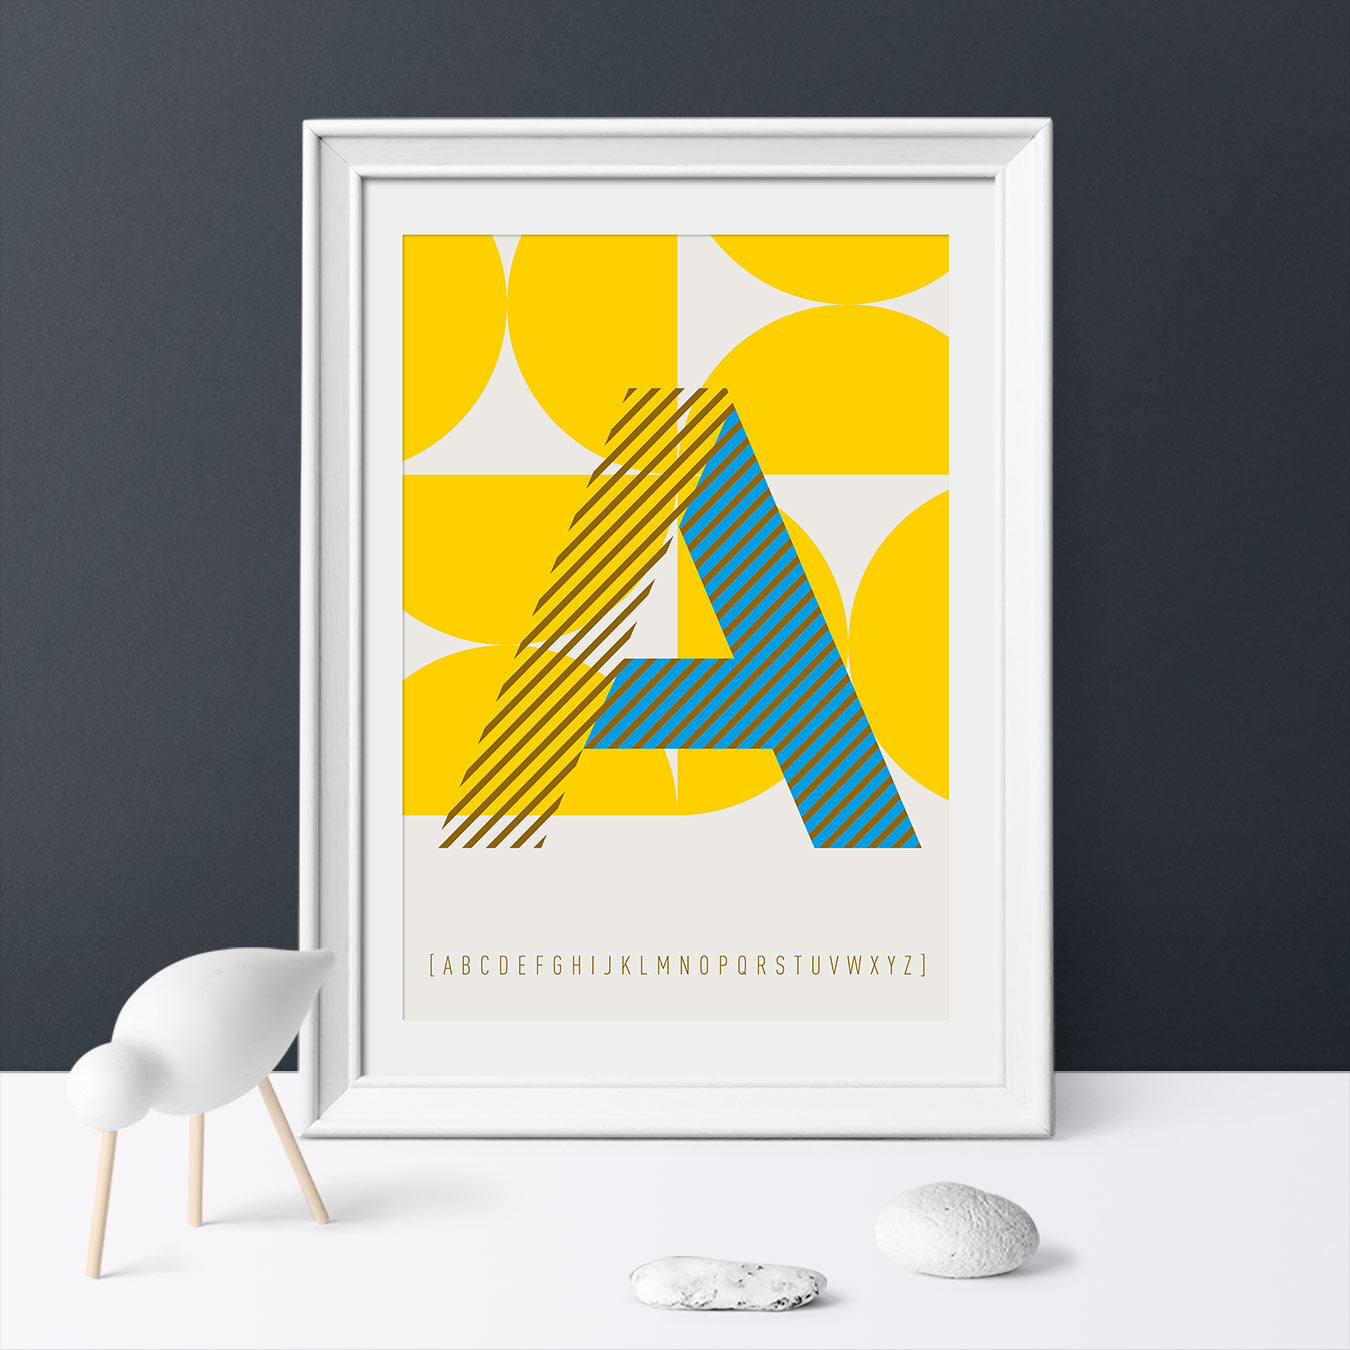 DRUCK ›Buchstabe A‹; ABC, Wandbild, Typo-Poster, Kunstdruck, Alphabet, Typografie